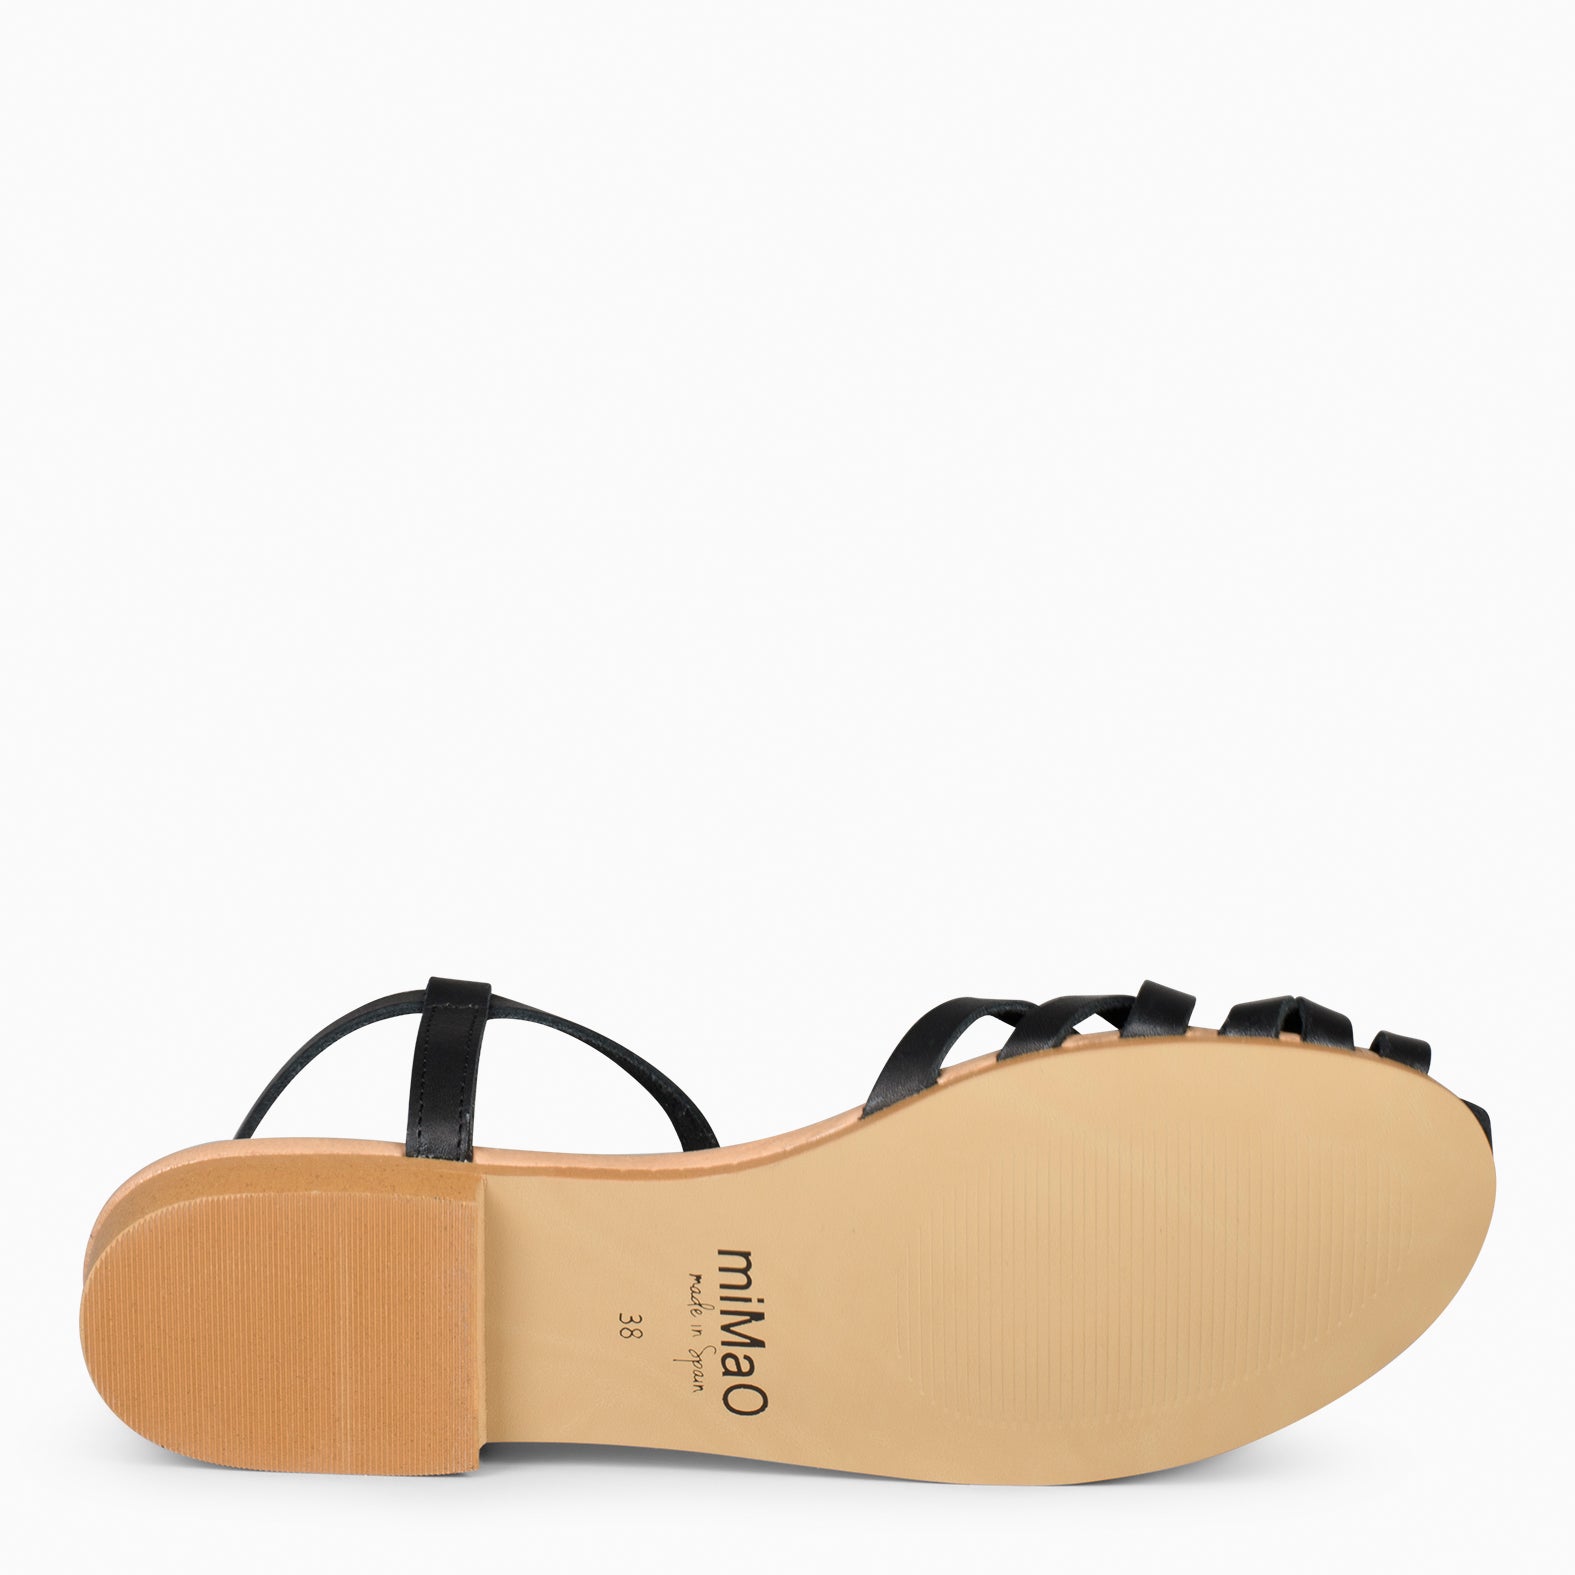 BEACH - BLACK Braided Flat Sandals 